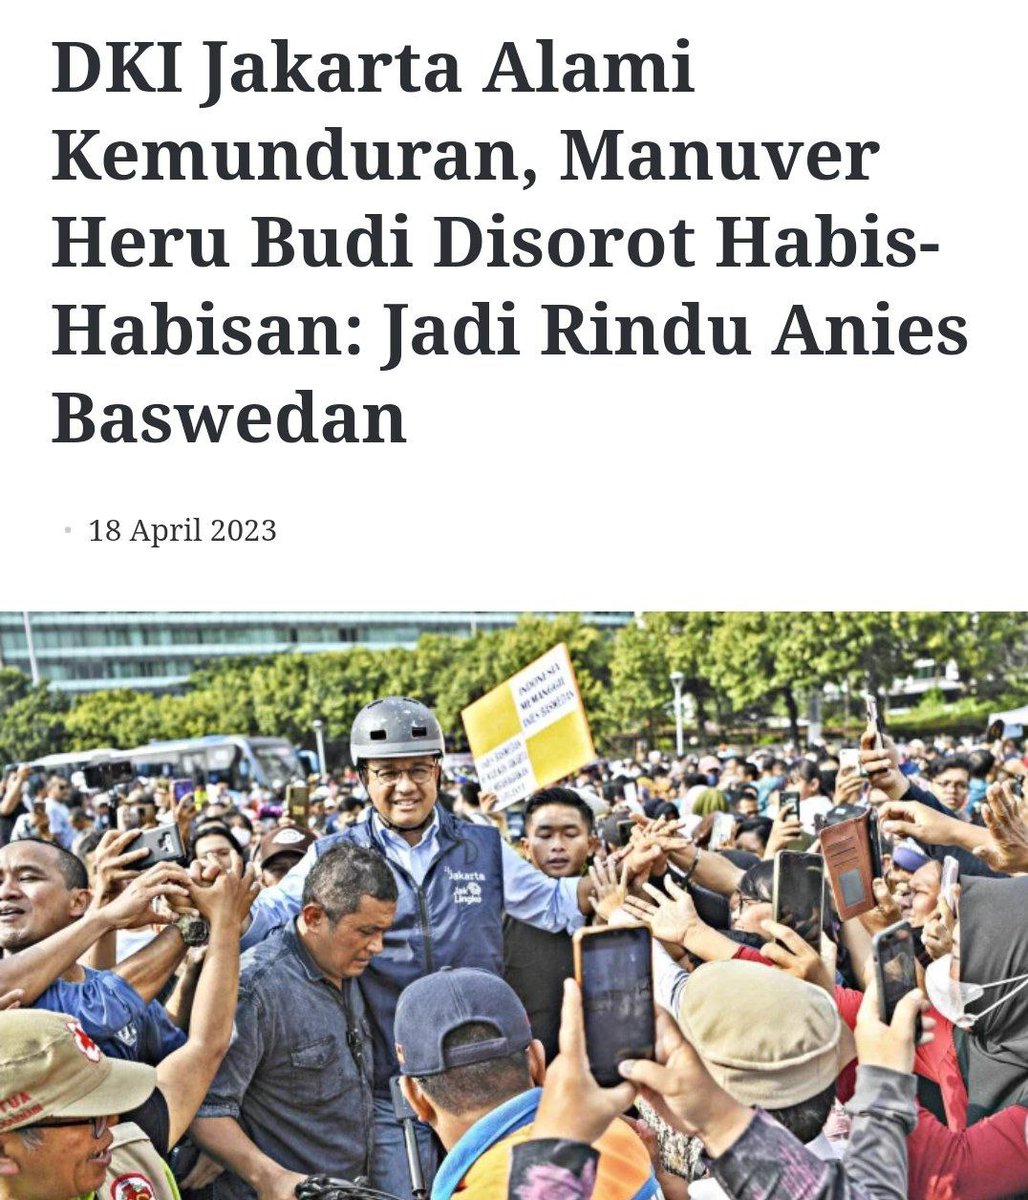 Yang menjegal Anies akan terjungkal.

Warga Jakarta rindu Anies, gak resep Heru Budi PDI

#JokowiGarongDemokrasi 
#JokowiGarongDemokrasi